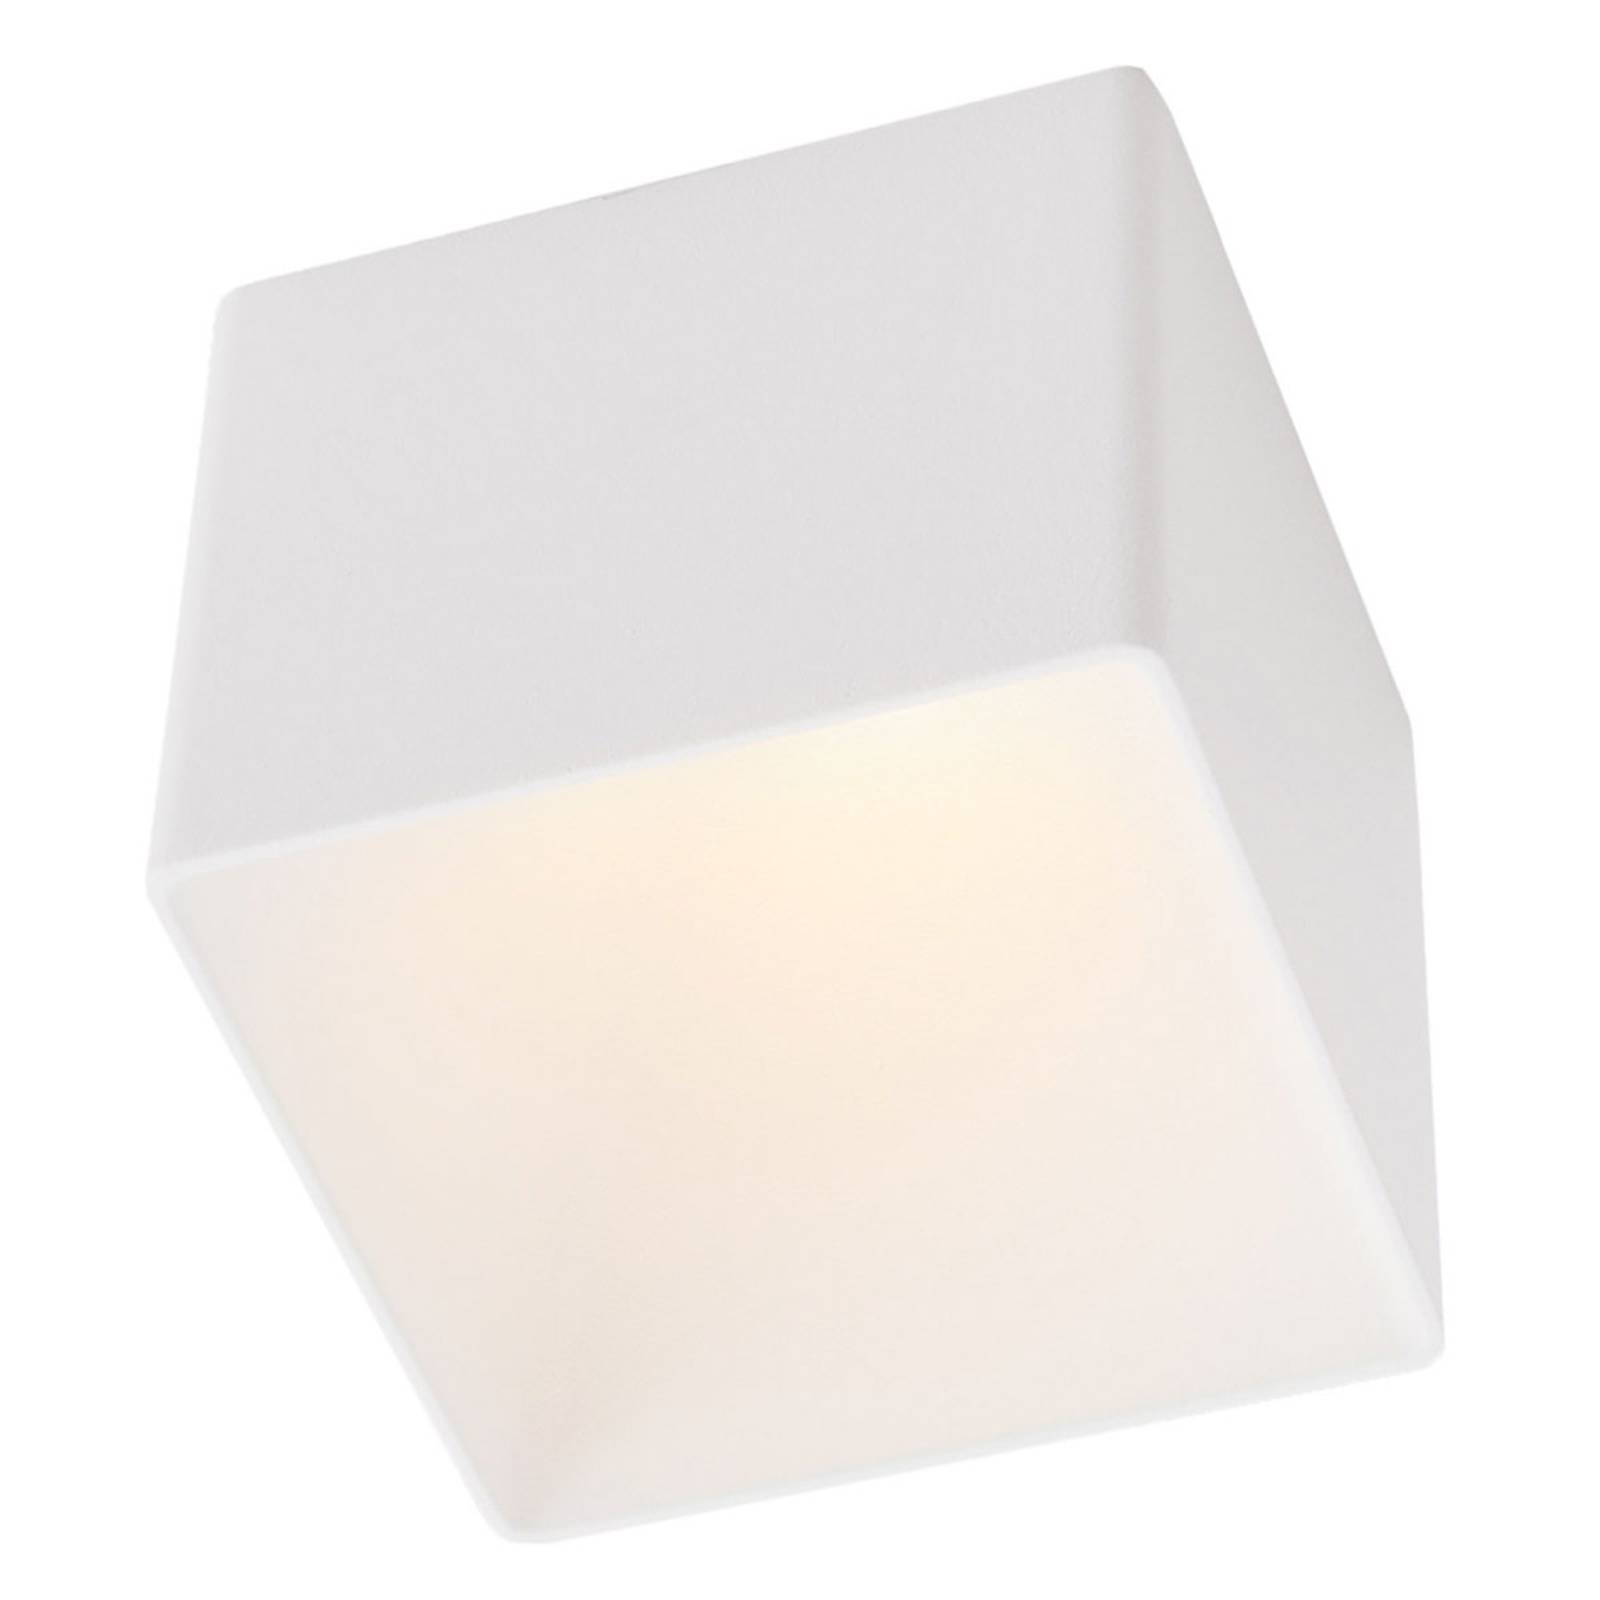 The Light Group GF design Blocky Einbaulampe IP54 weiß 3.000 K